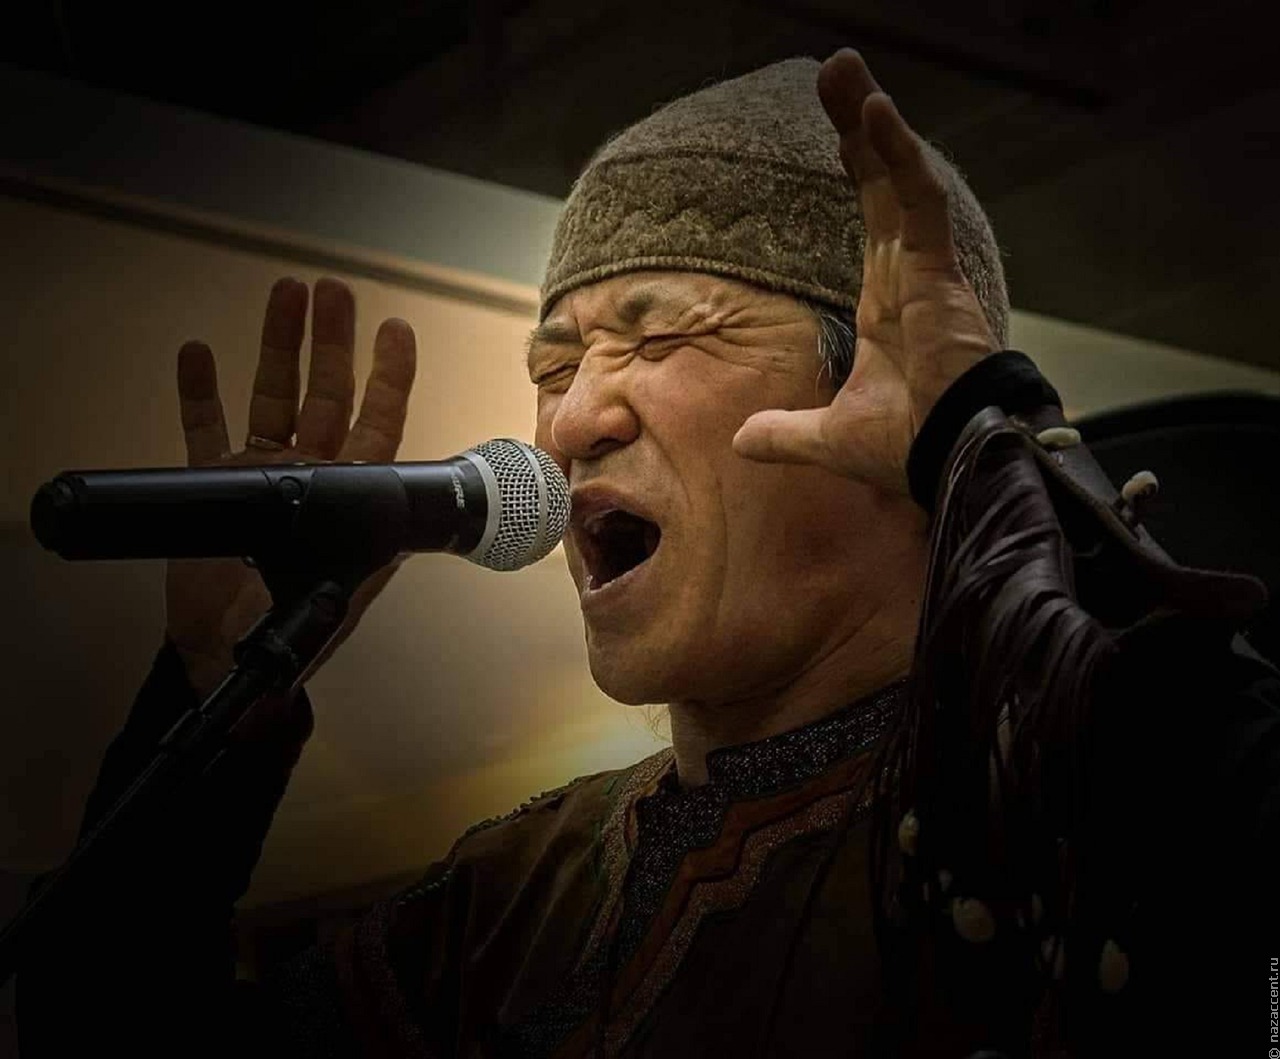 Этно-рок группа представит горловое пение и алтайские сказания на концерте в Москве